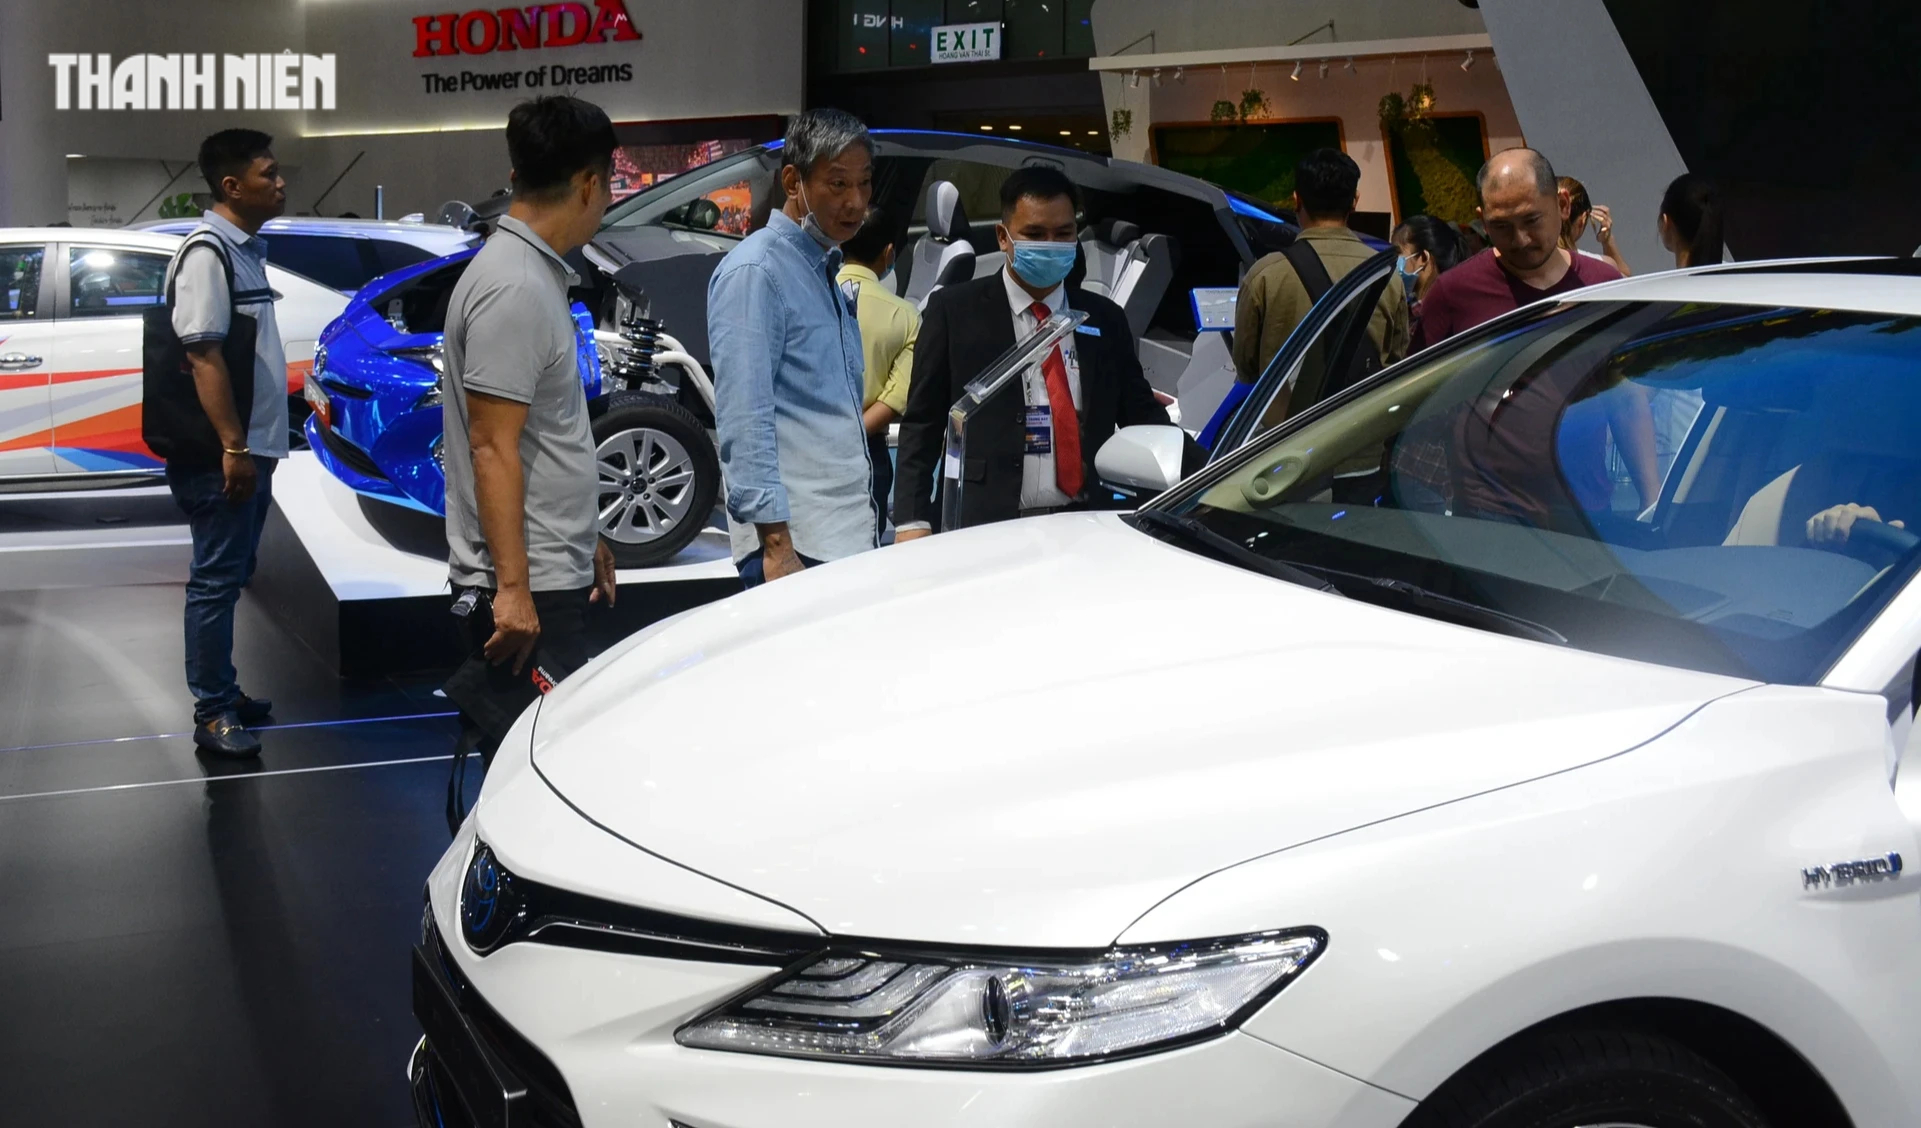 Lượng tiêu thụ dòng xe sedan tại Việt Nam sụt giảm, nguy cơ bị MPV vượt mặt - Ảnh 1.